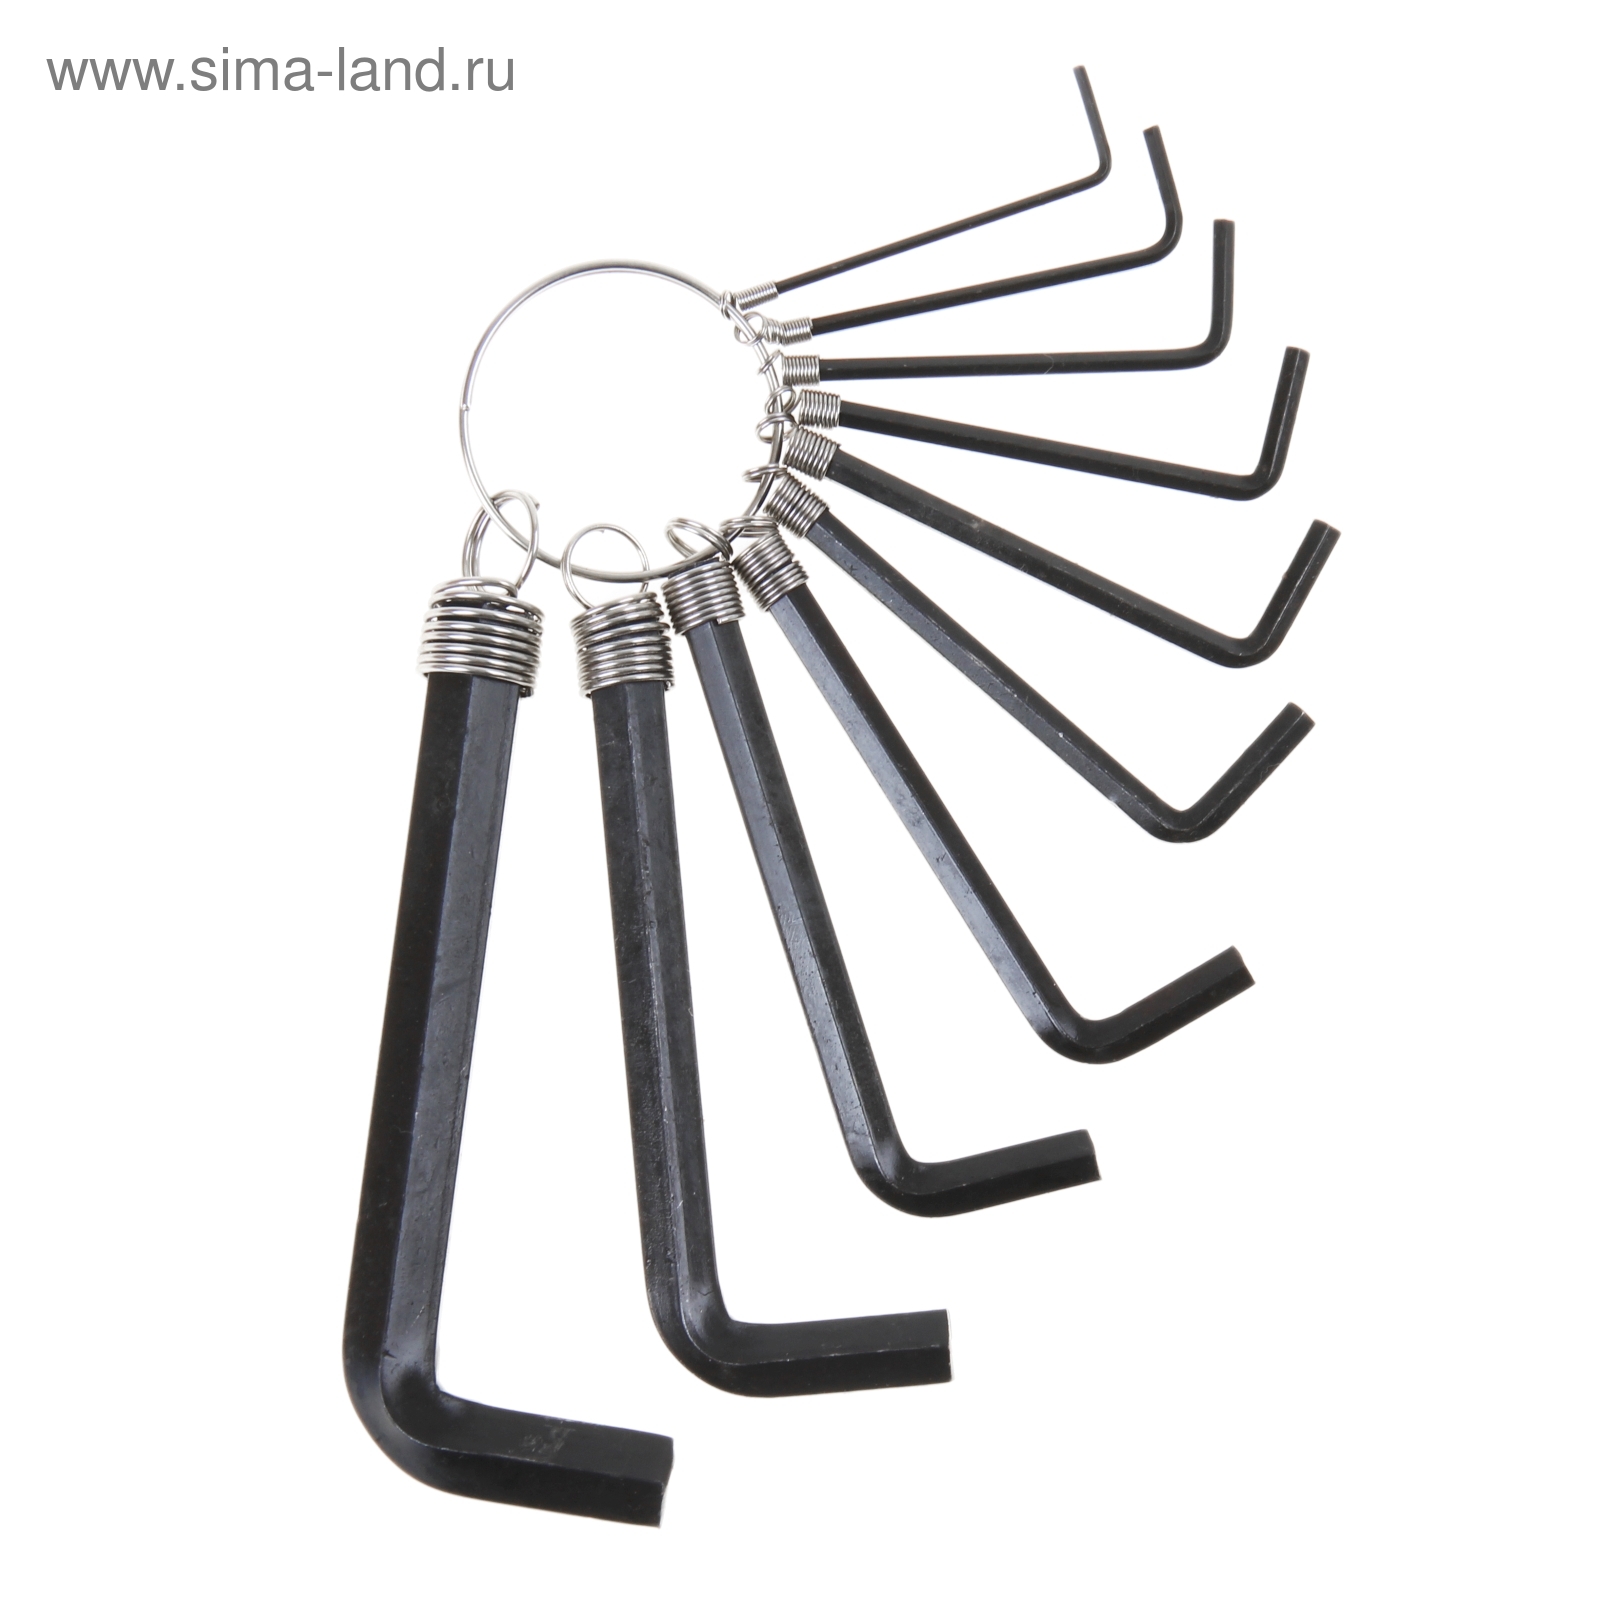 Набор ключей шестигранников TUNDRA basic, 1.5 - 10 мм 10 штук на кольце, удлиненные